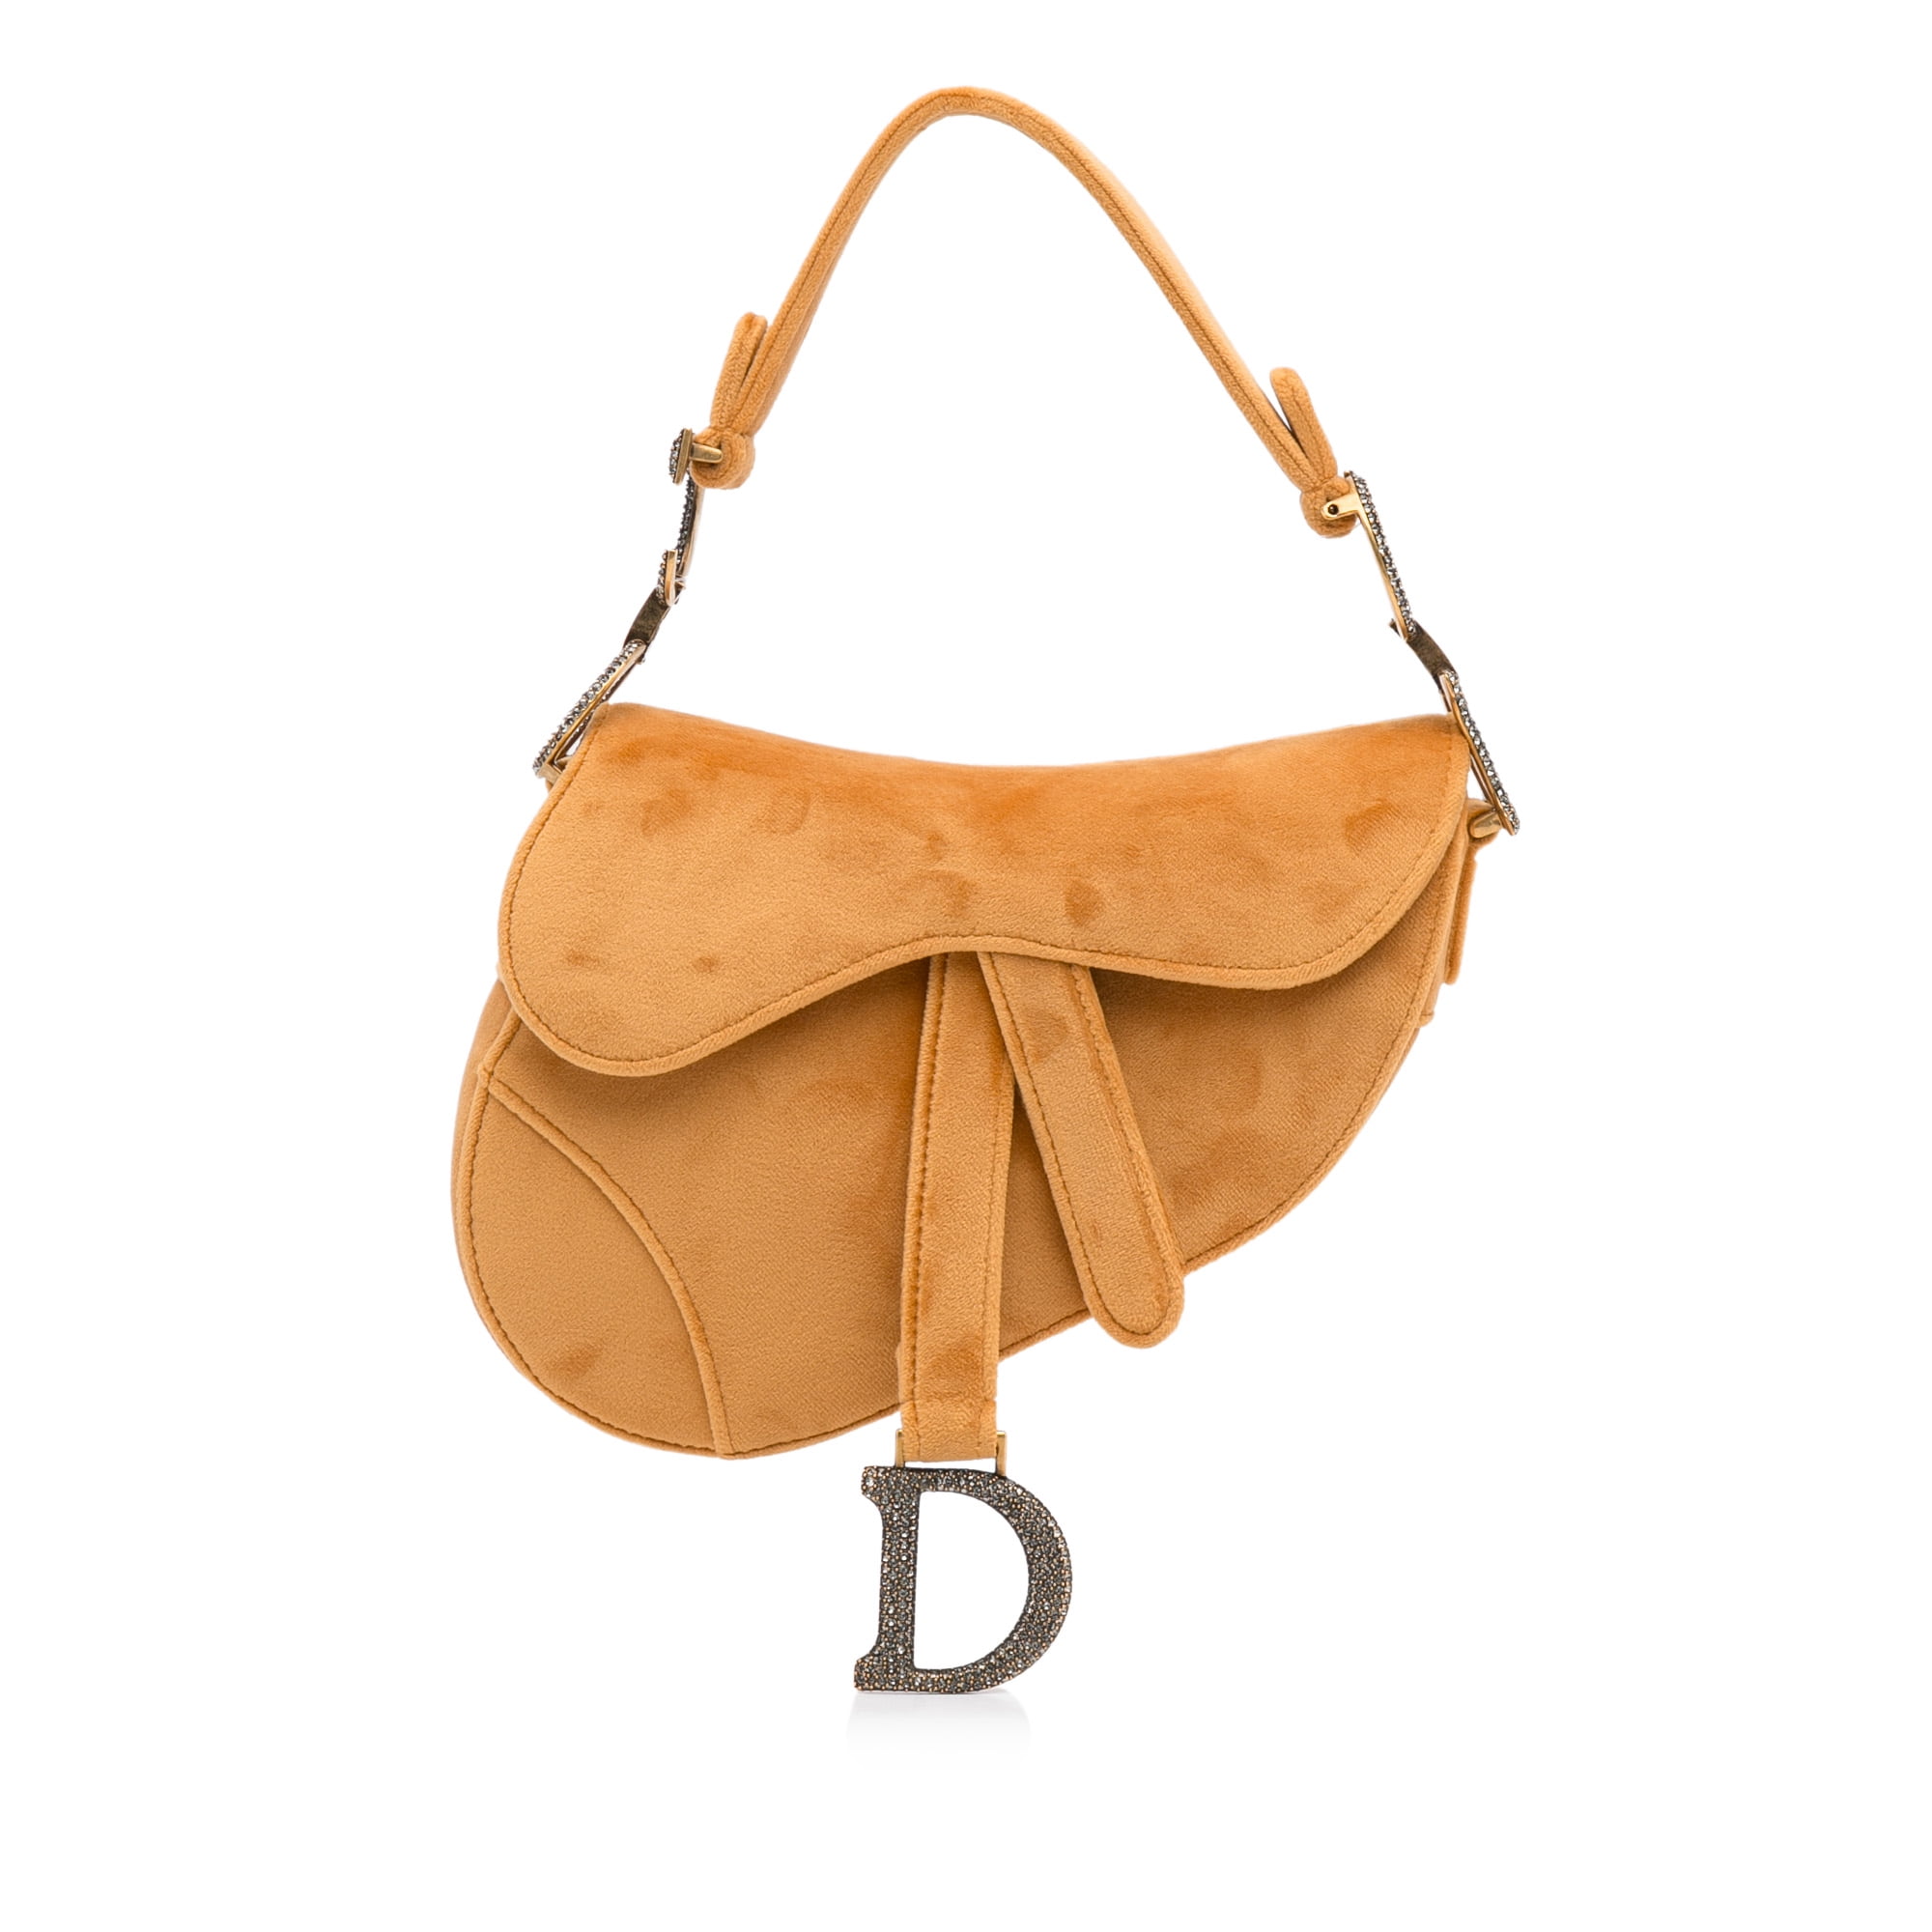 Pre-owned Velvet Handbag In Brown